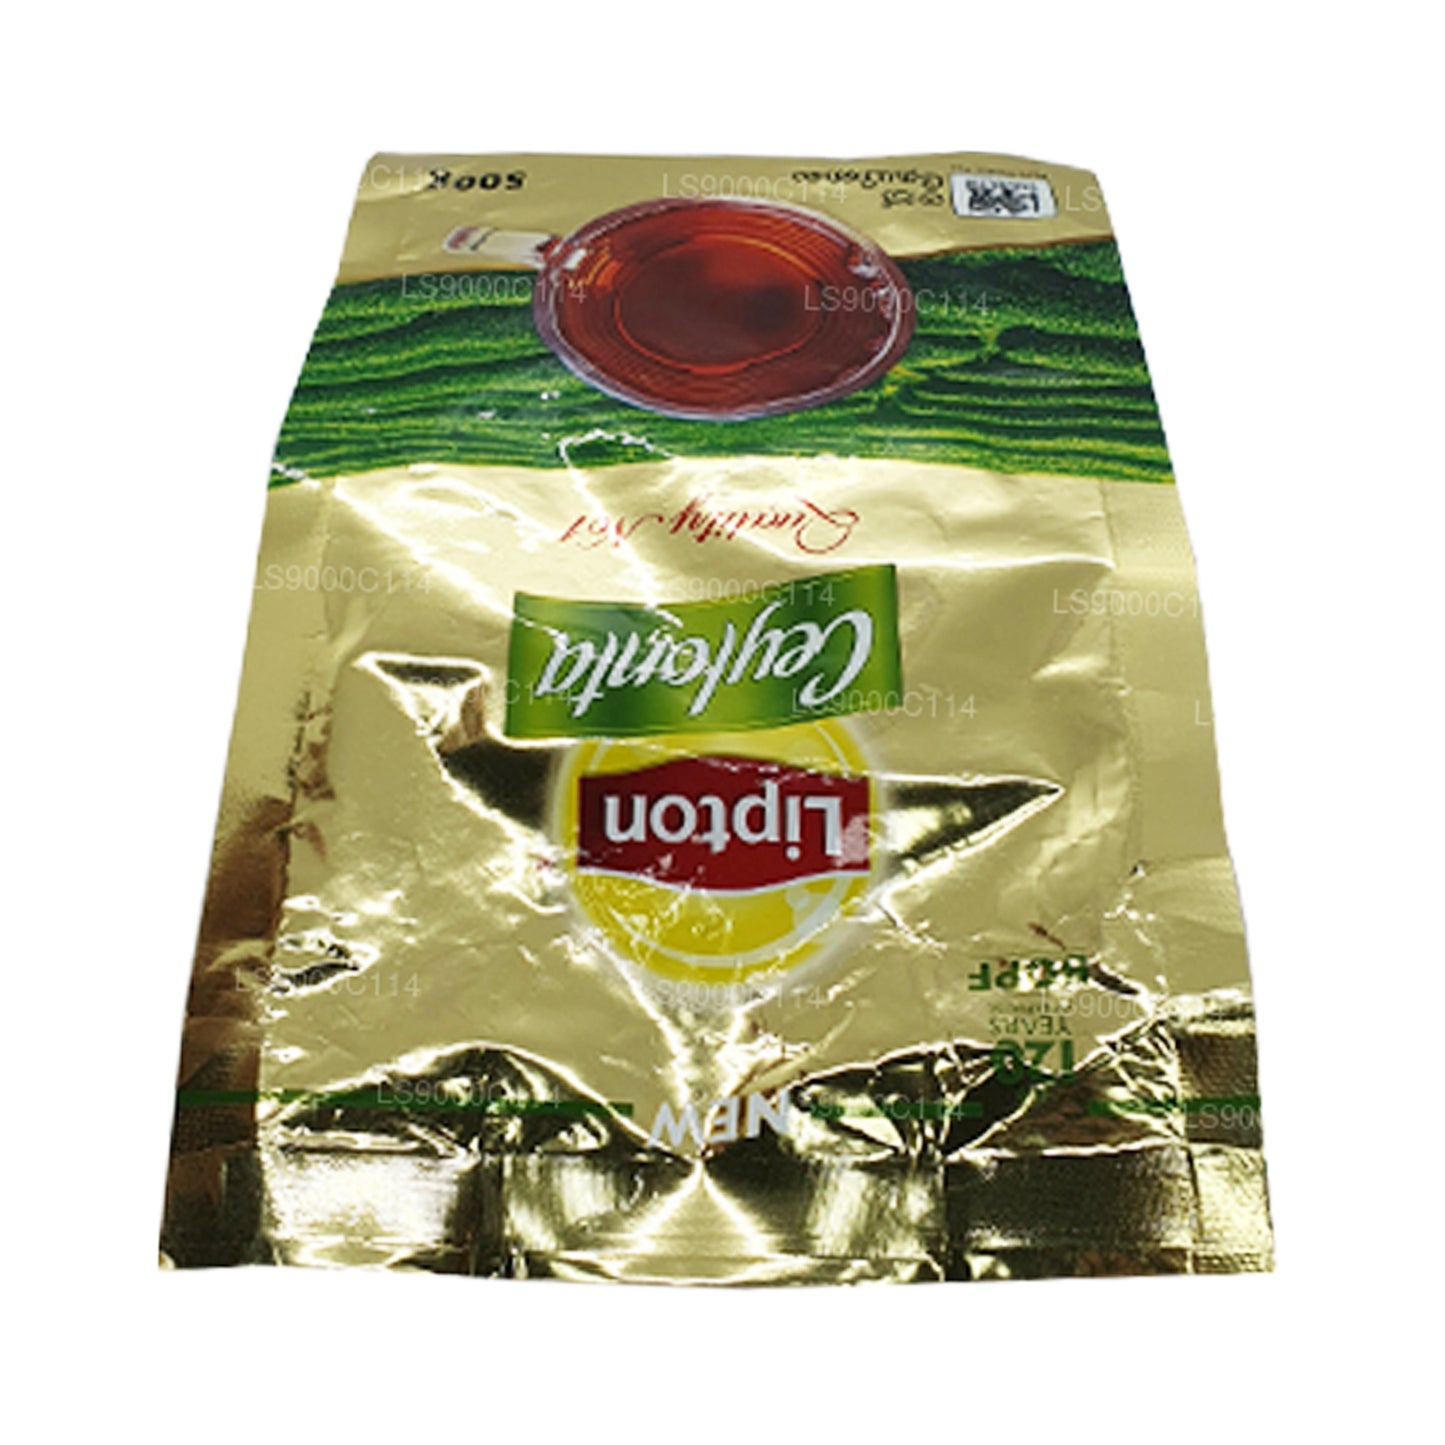 Foglie di tè Lipton Ceylonta (500g)